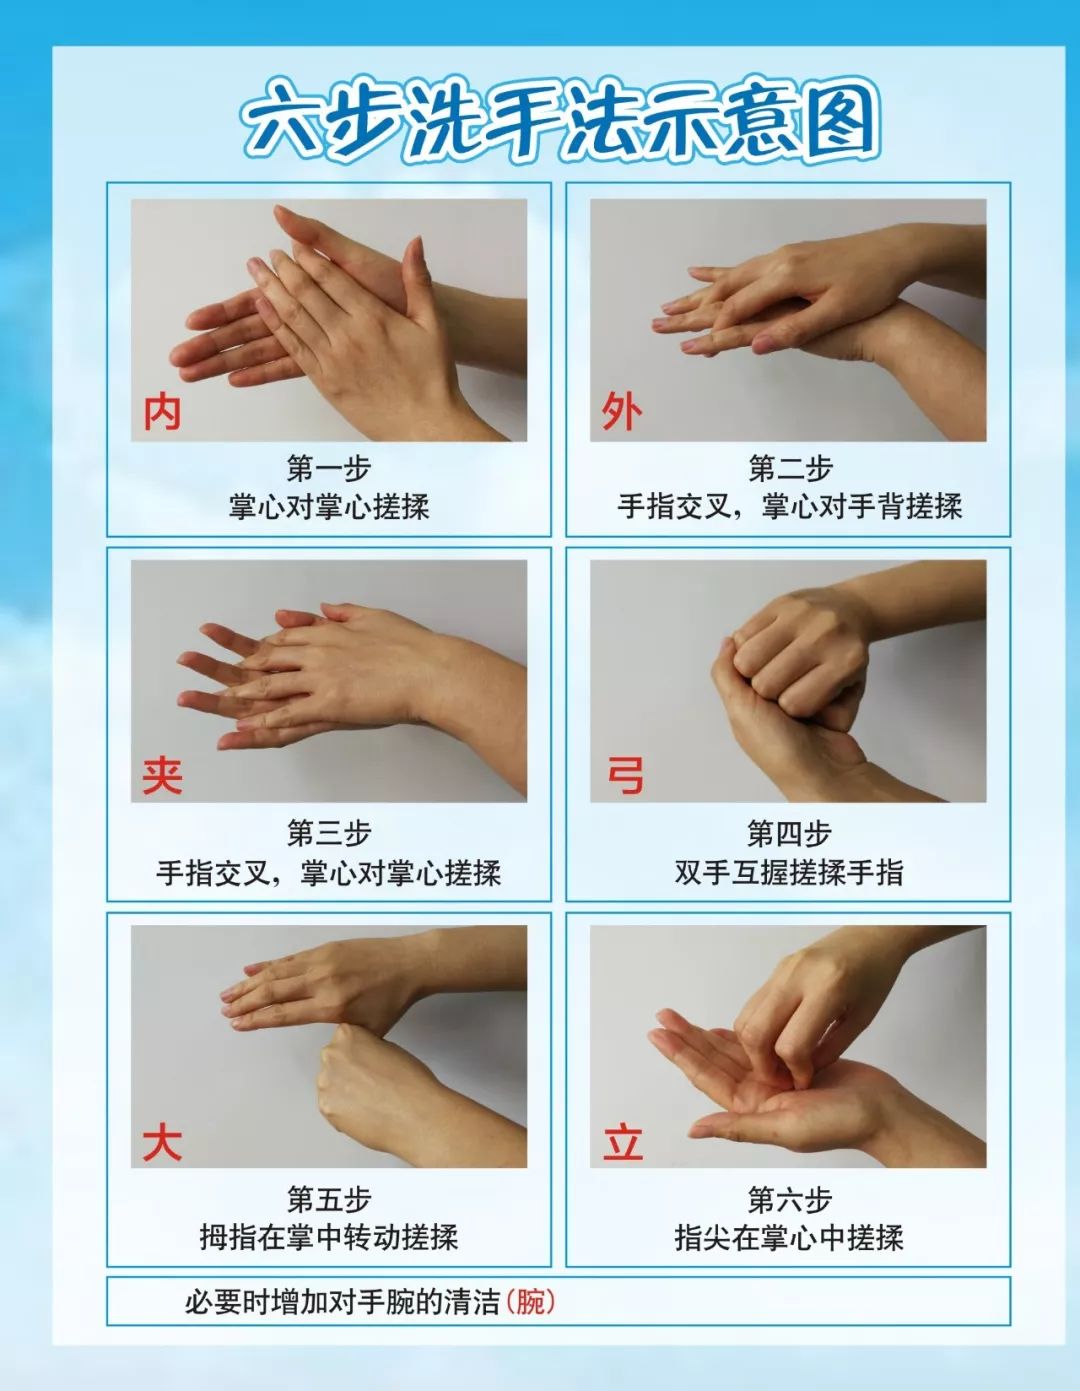 病从手入,一图告诉你如何正确洗手及避免疾病感染!